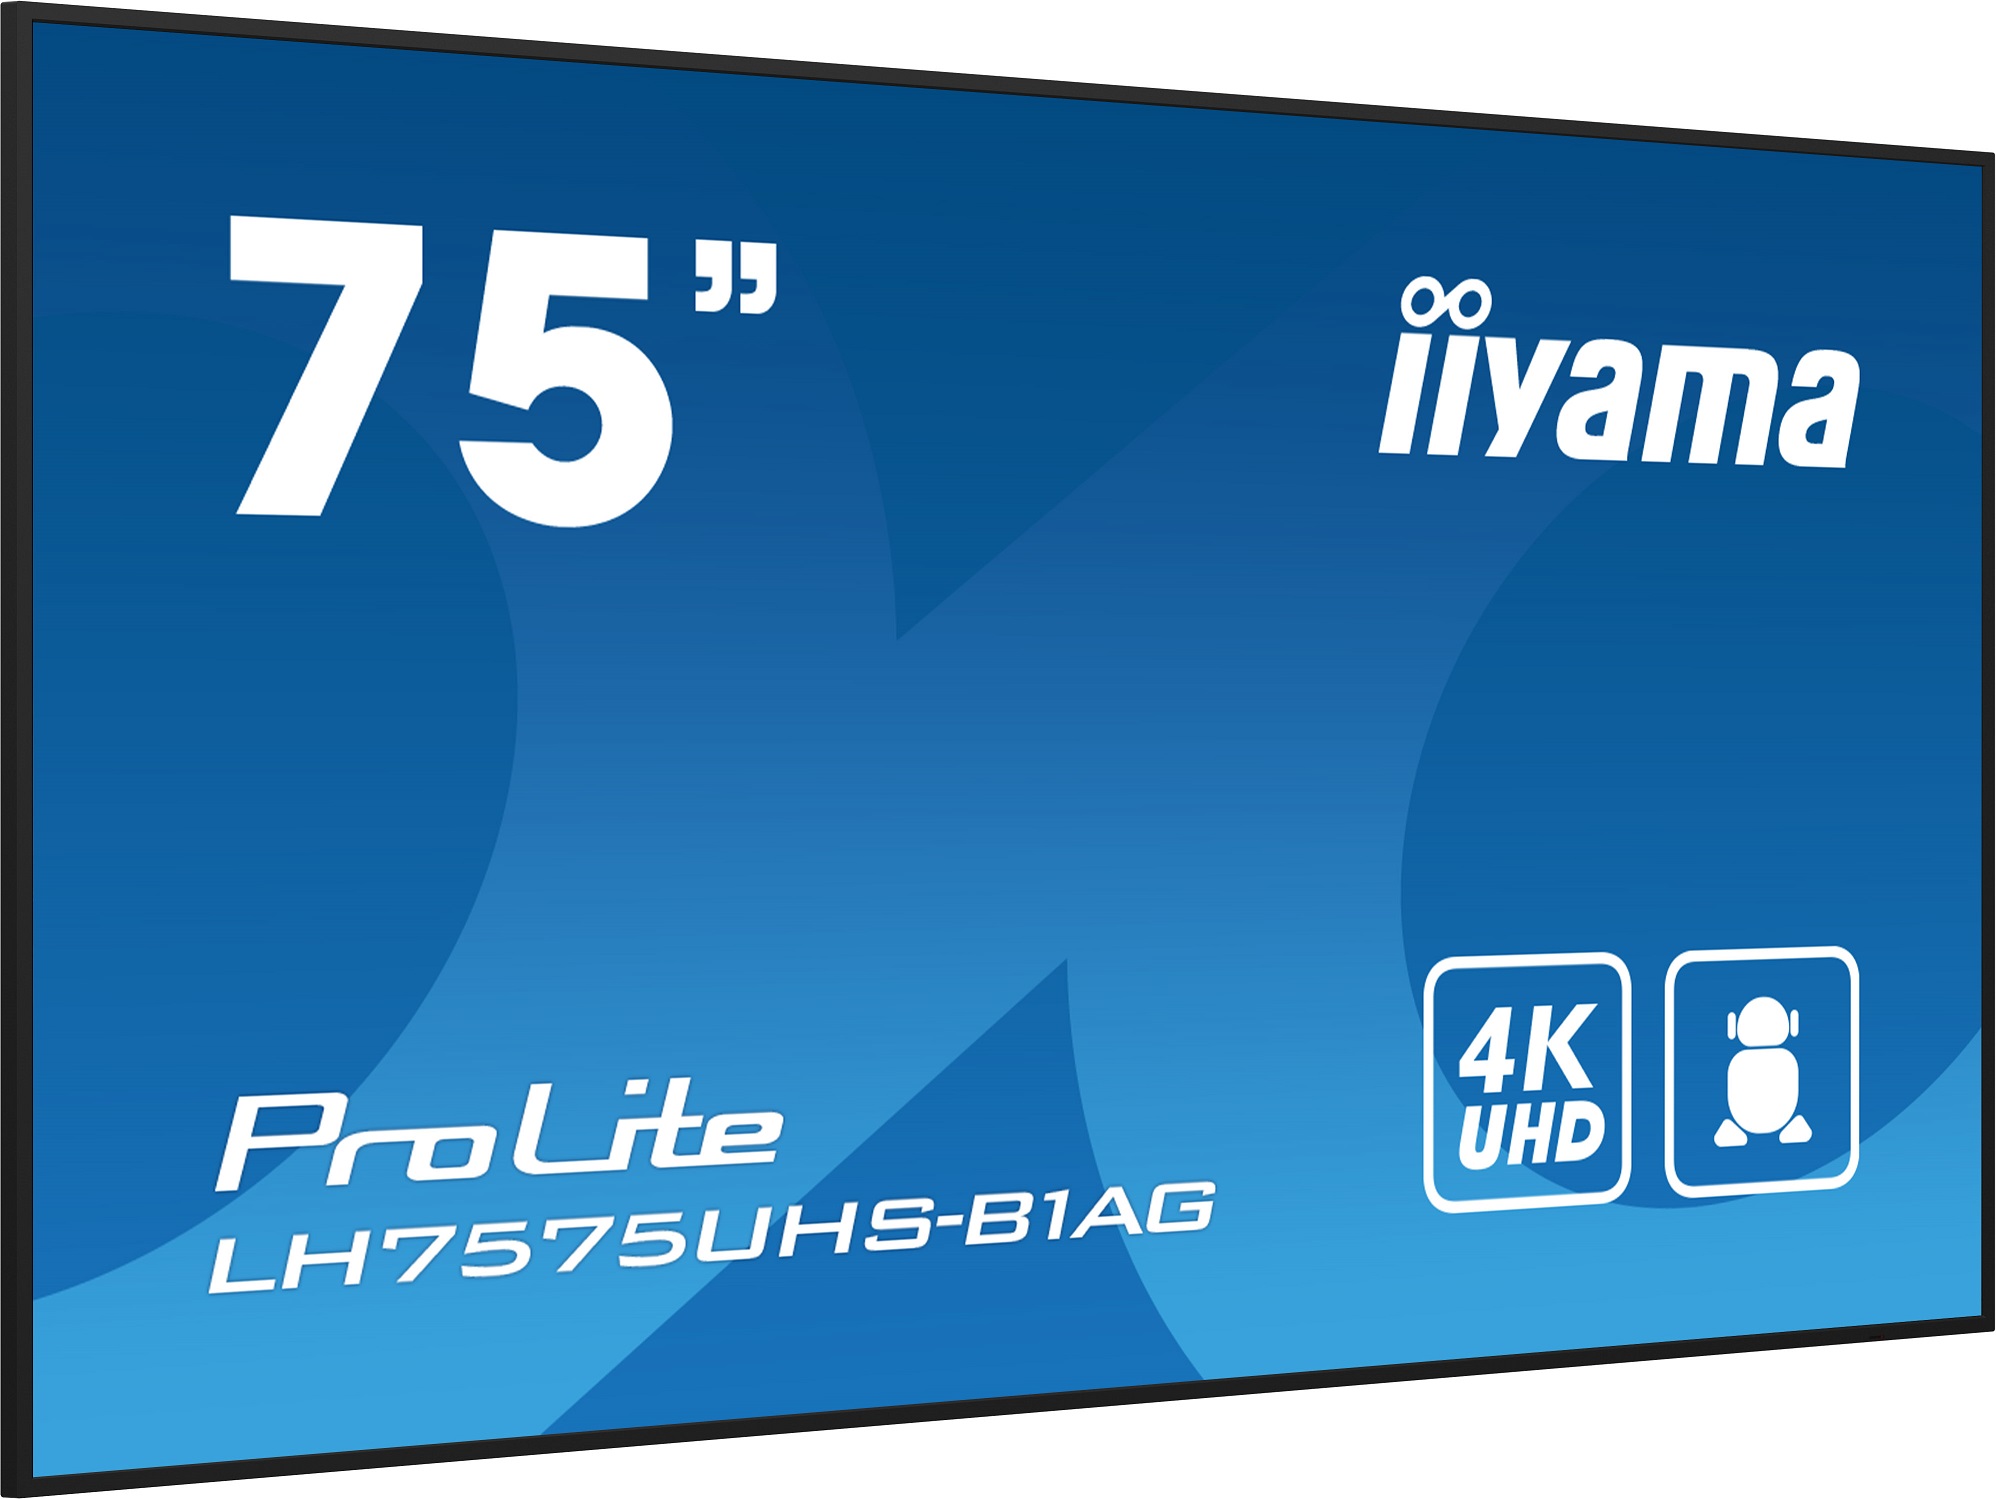 75" iiyama LH7575UHS-B1AG: IPS, 4K, 24/ 7, Android 11 